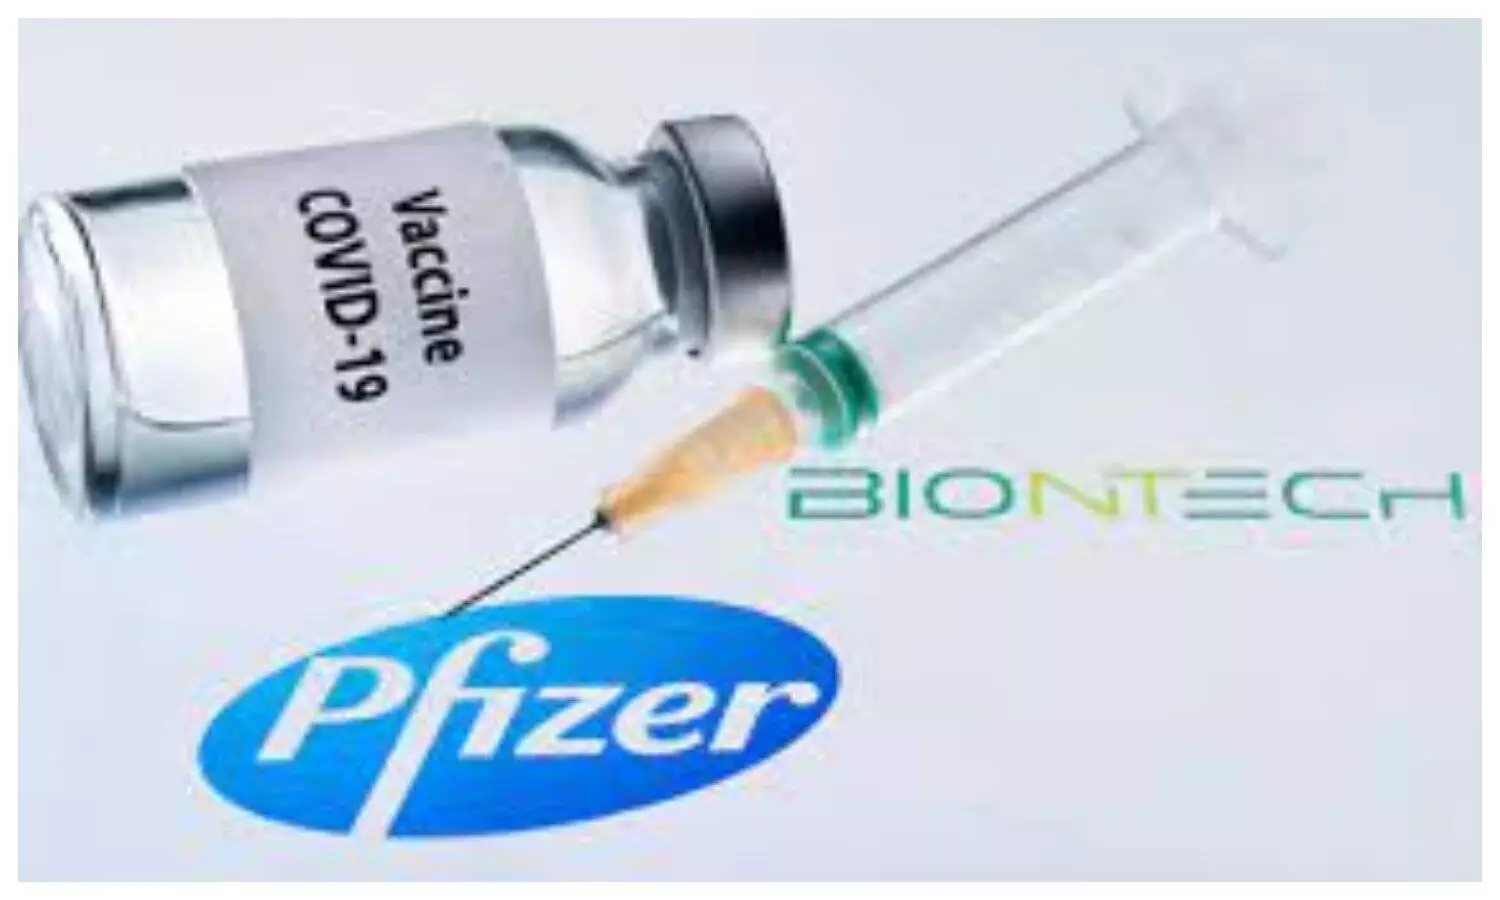 Corona Pfizer Vaccine